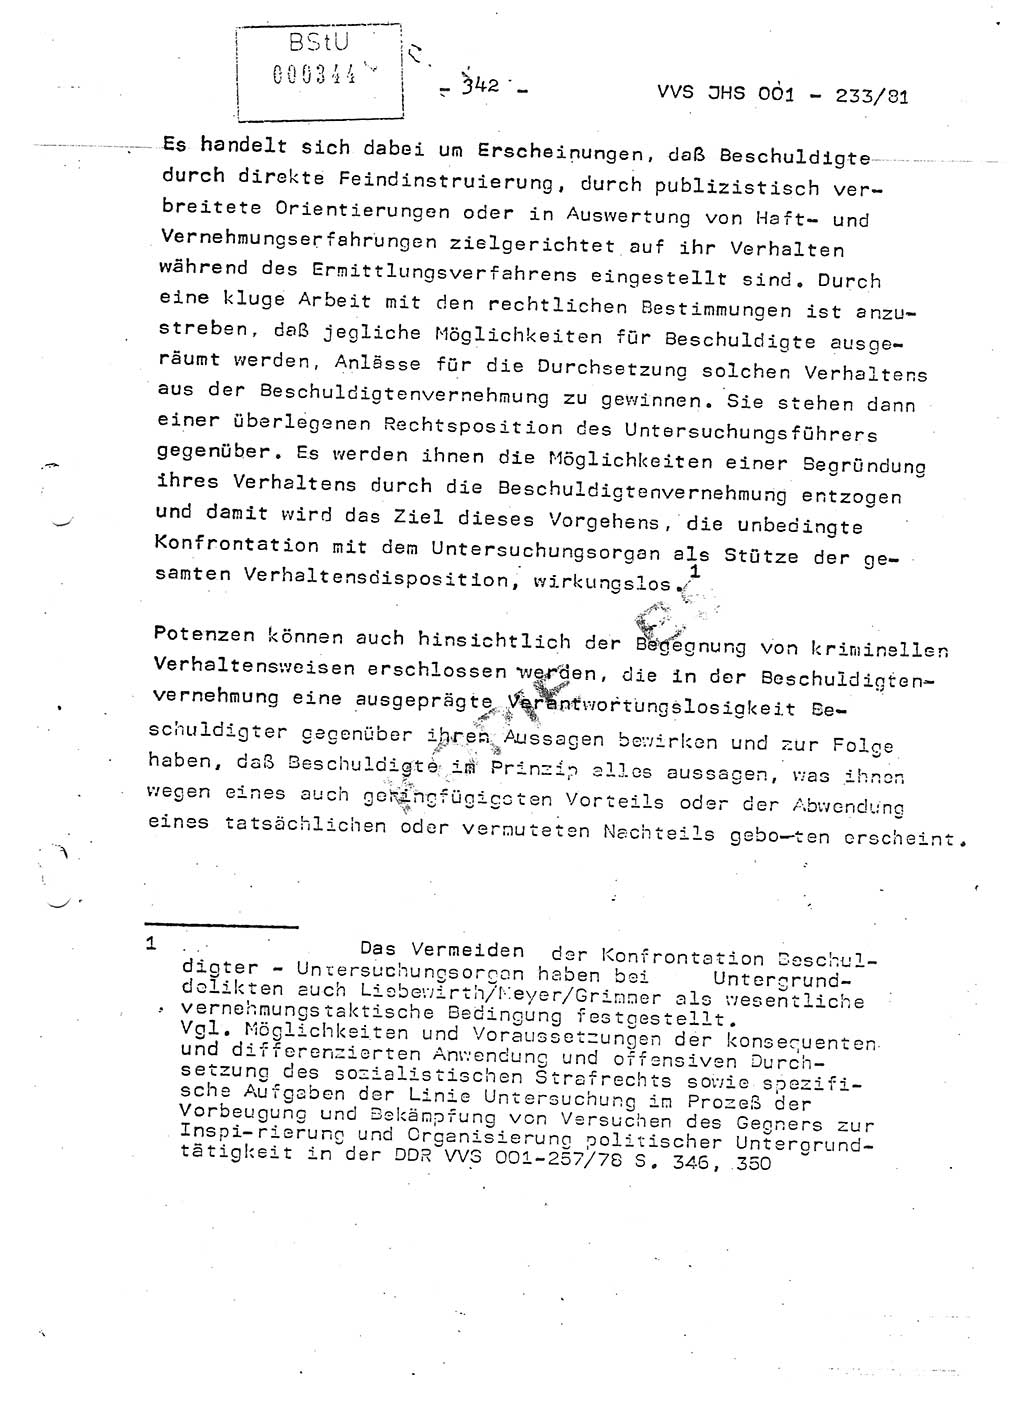 Dissertation Oberstleutnant Horst Zank (JHS), Oberstleutnant Dr. Karl-Heinz Knoblauch (JHS), Oberstleutnant Gustav-Adolf Kowalewski (HA Ⅸ), Oberstleutnant Wolfgang Plötner (HA Ⅸ), Ministerium für Staatssicherheit (MfS) [Deutsche Demokratische Republik (DDR)], Juristische Hochschule (JHS), Vertrauliche Verschlußsache (VVS) o001-233/81, Potsdam 1981, Blatt 342 (Diss. MfS DDR JHS VVS o001-233/81 1981, Bl. 342)